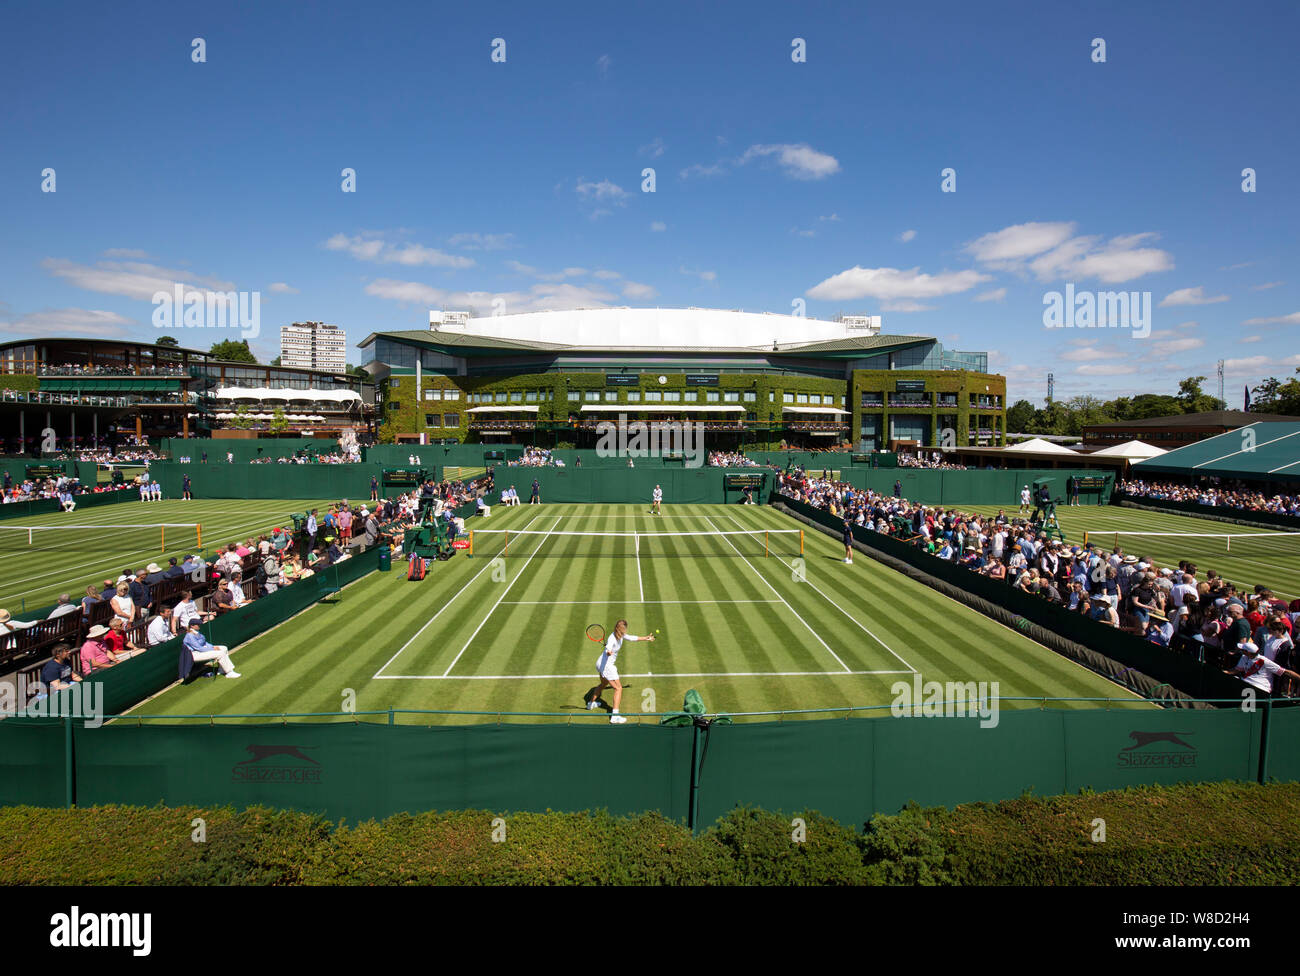 Vue panoramique de l'extérieur de l'édifice du Centre avec les tribunaux dans l'arrière-plan, 2019 de Wimbledon, Londres, Angleterre, Royaume-Uni. Banque D'Images